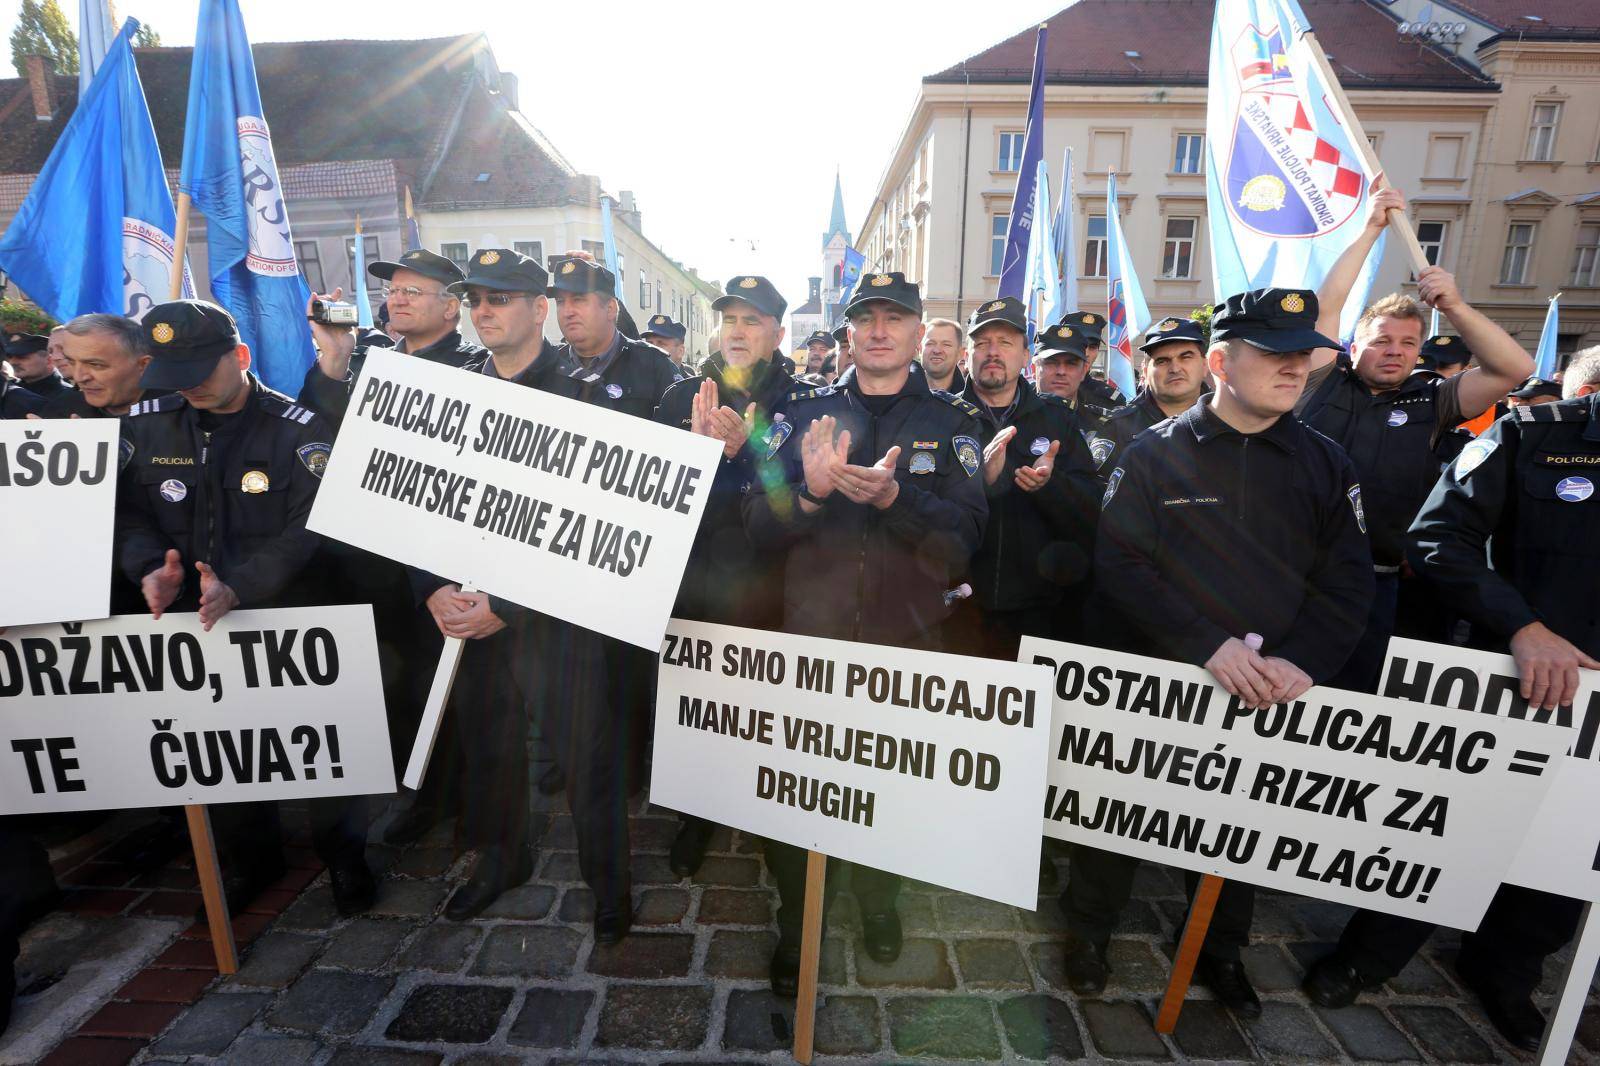 Sindikat policijskih službenika iskazao podršku prosvjetarima